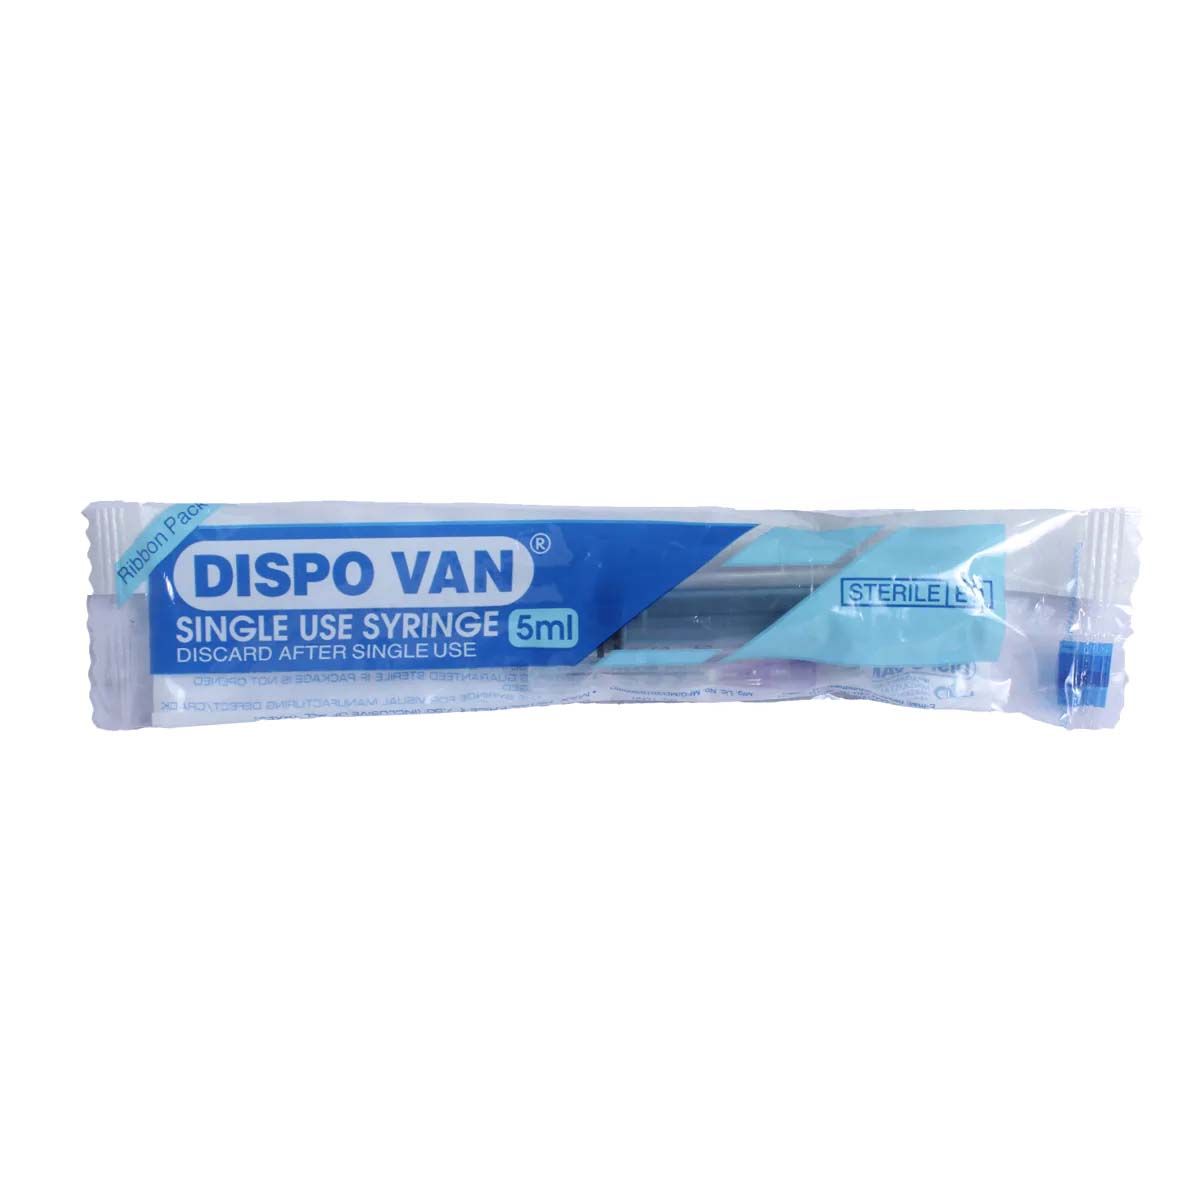 Buy Dispo Van Syringe, 5 ml Online